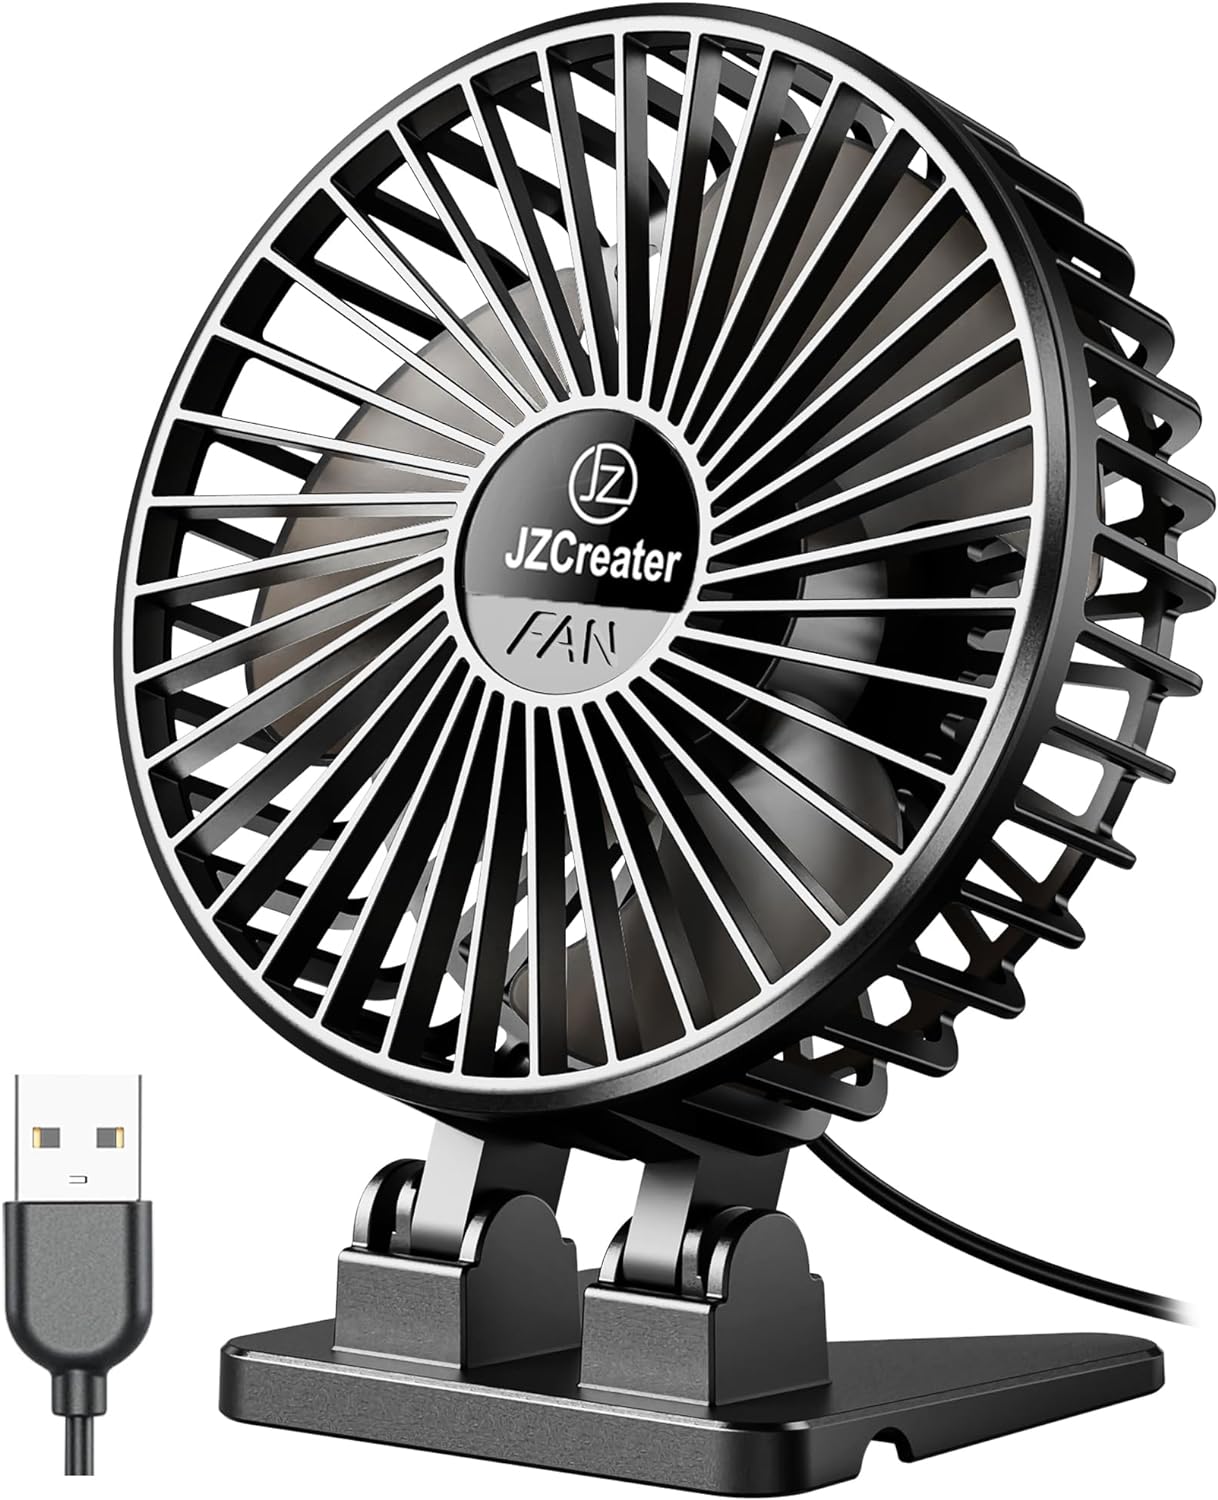 JZCreater USB Desk Fan, Mini Fan Portable, 3 Speeds Desktop Table Cooling Fan, Plug in Power Fan, Rotation Strong Wind, Quiet Personal Small Fan for Home Desktop Office Travel Bedroom, Black Black